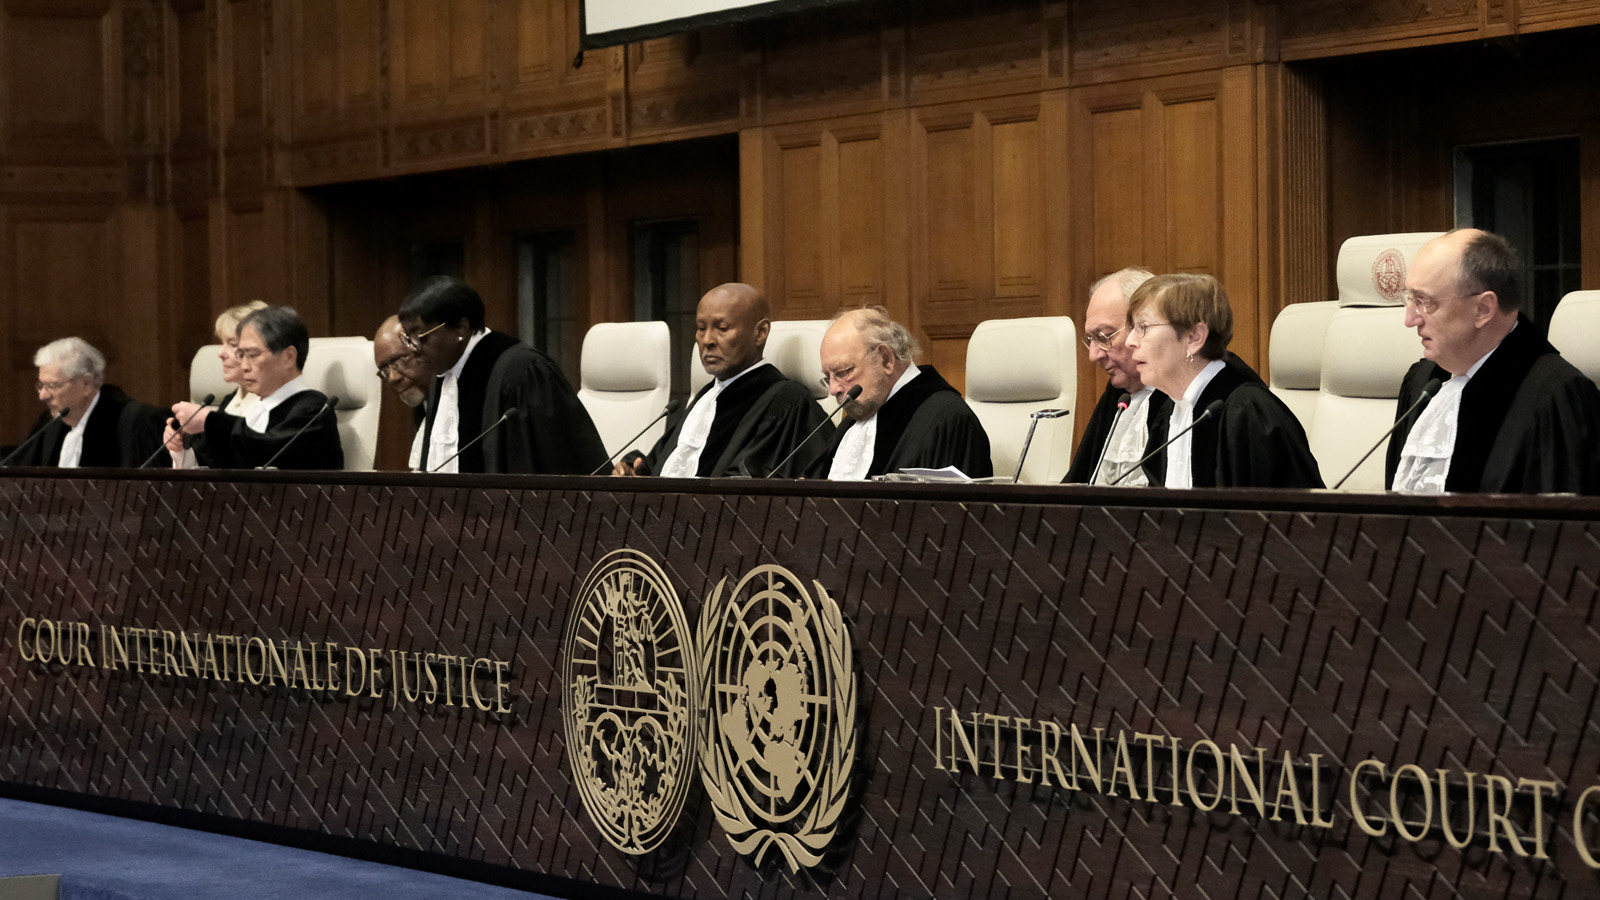 Ενώπιον του Διεθνούς Δικαστηρίου του ΟΗΕ η Γερμανία κατηγορούμενη για διευκόλυνση «γενοκτονίας» στη Γάζα